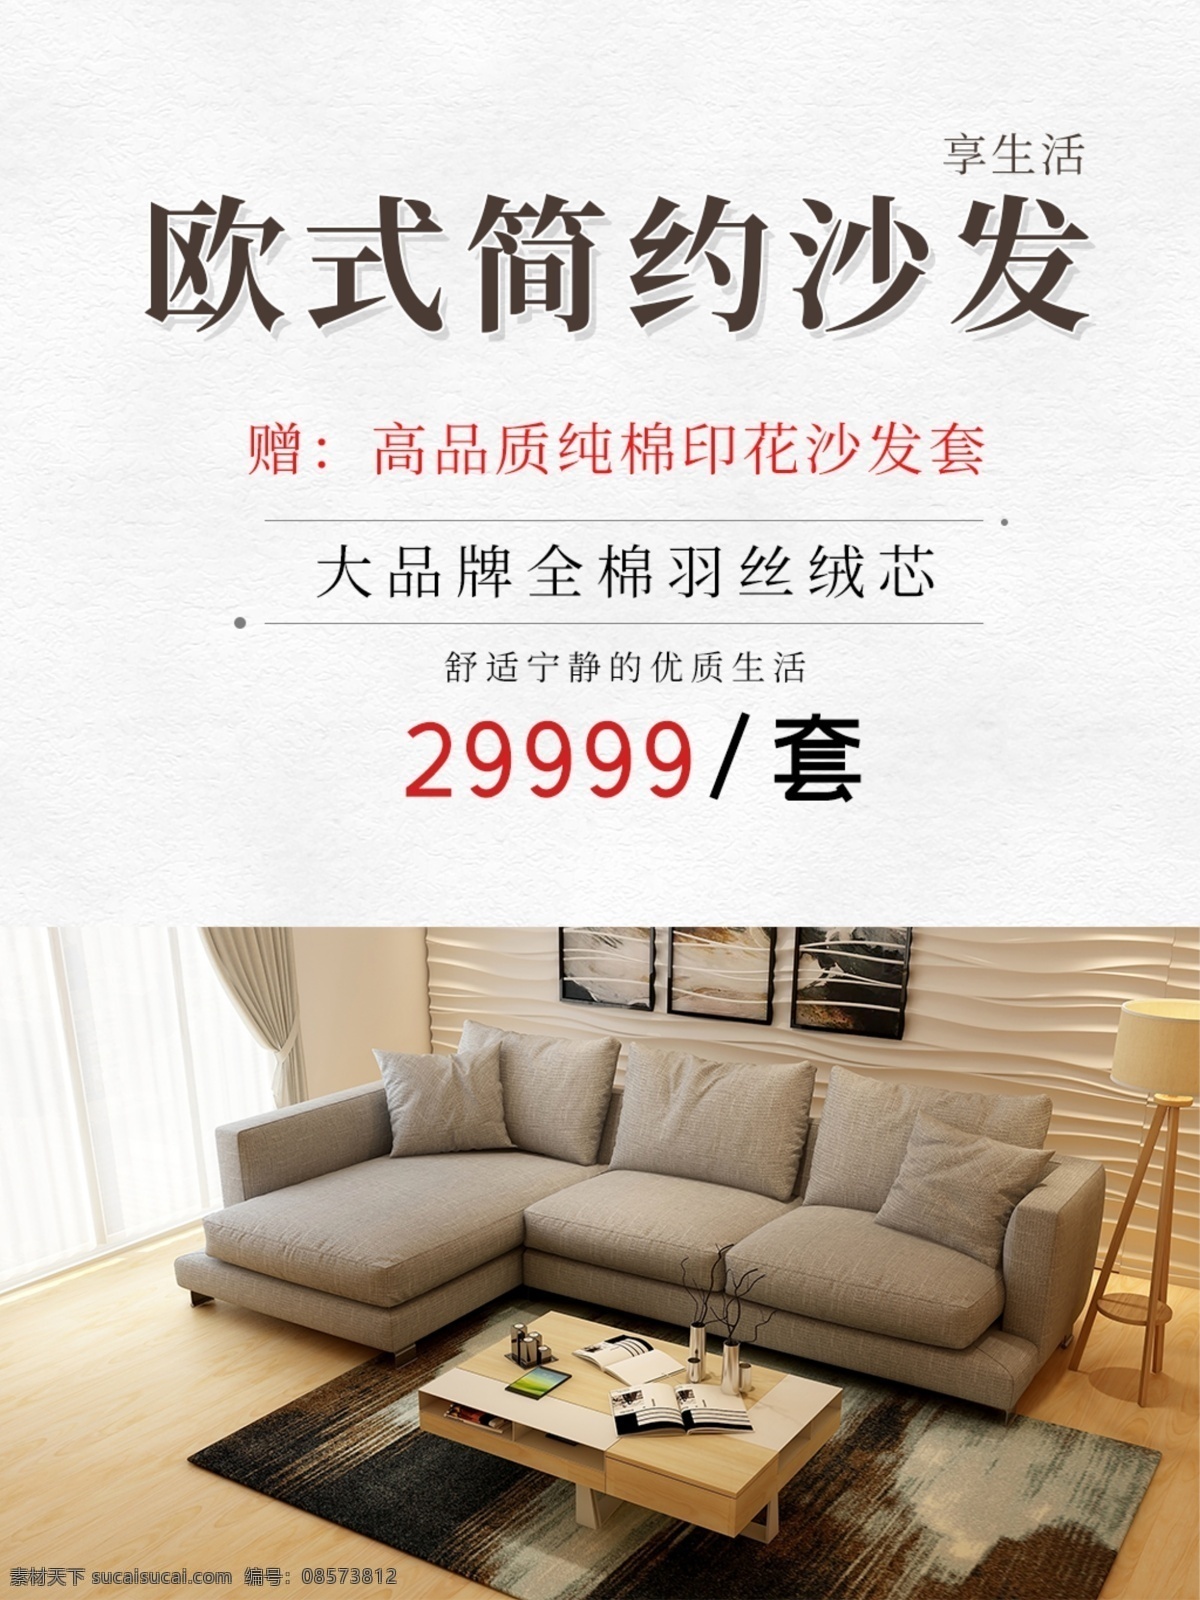 沙发图片 沙发 海报 产品 灯罩 绿植 布艺沙发 韩式 沙发广告 沙发海